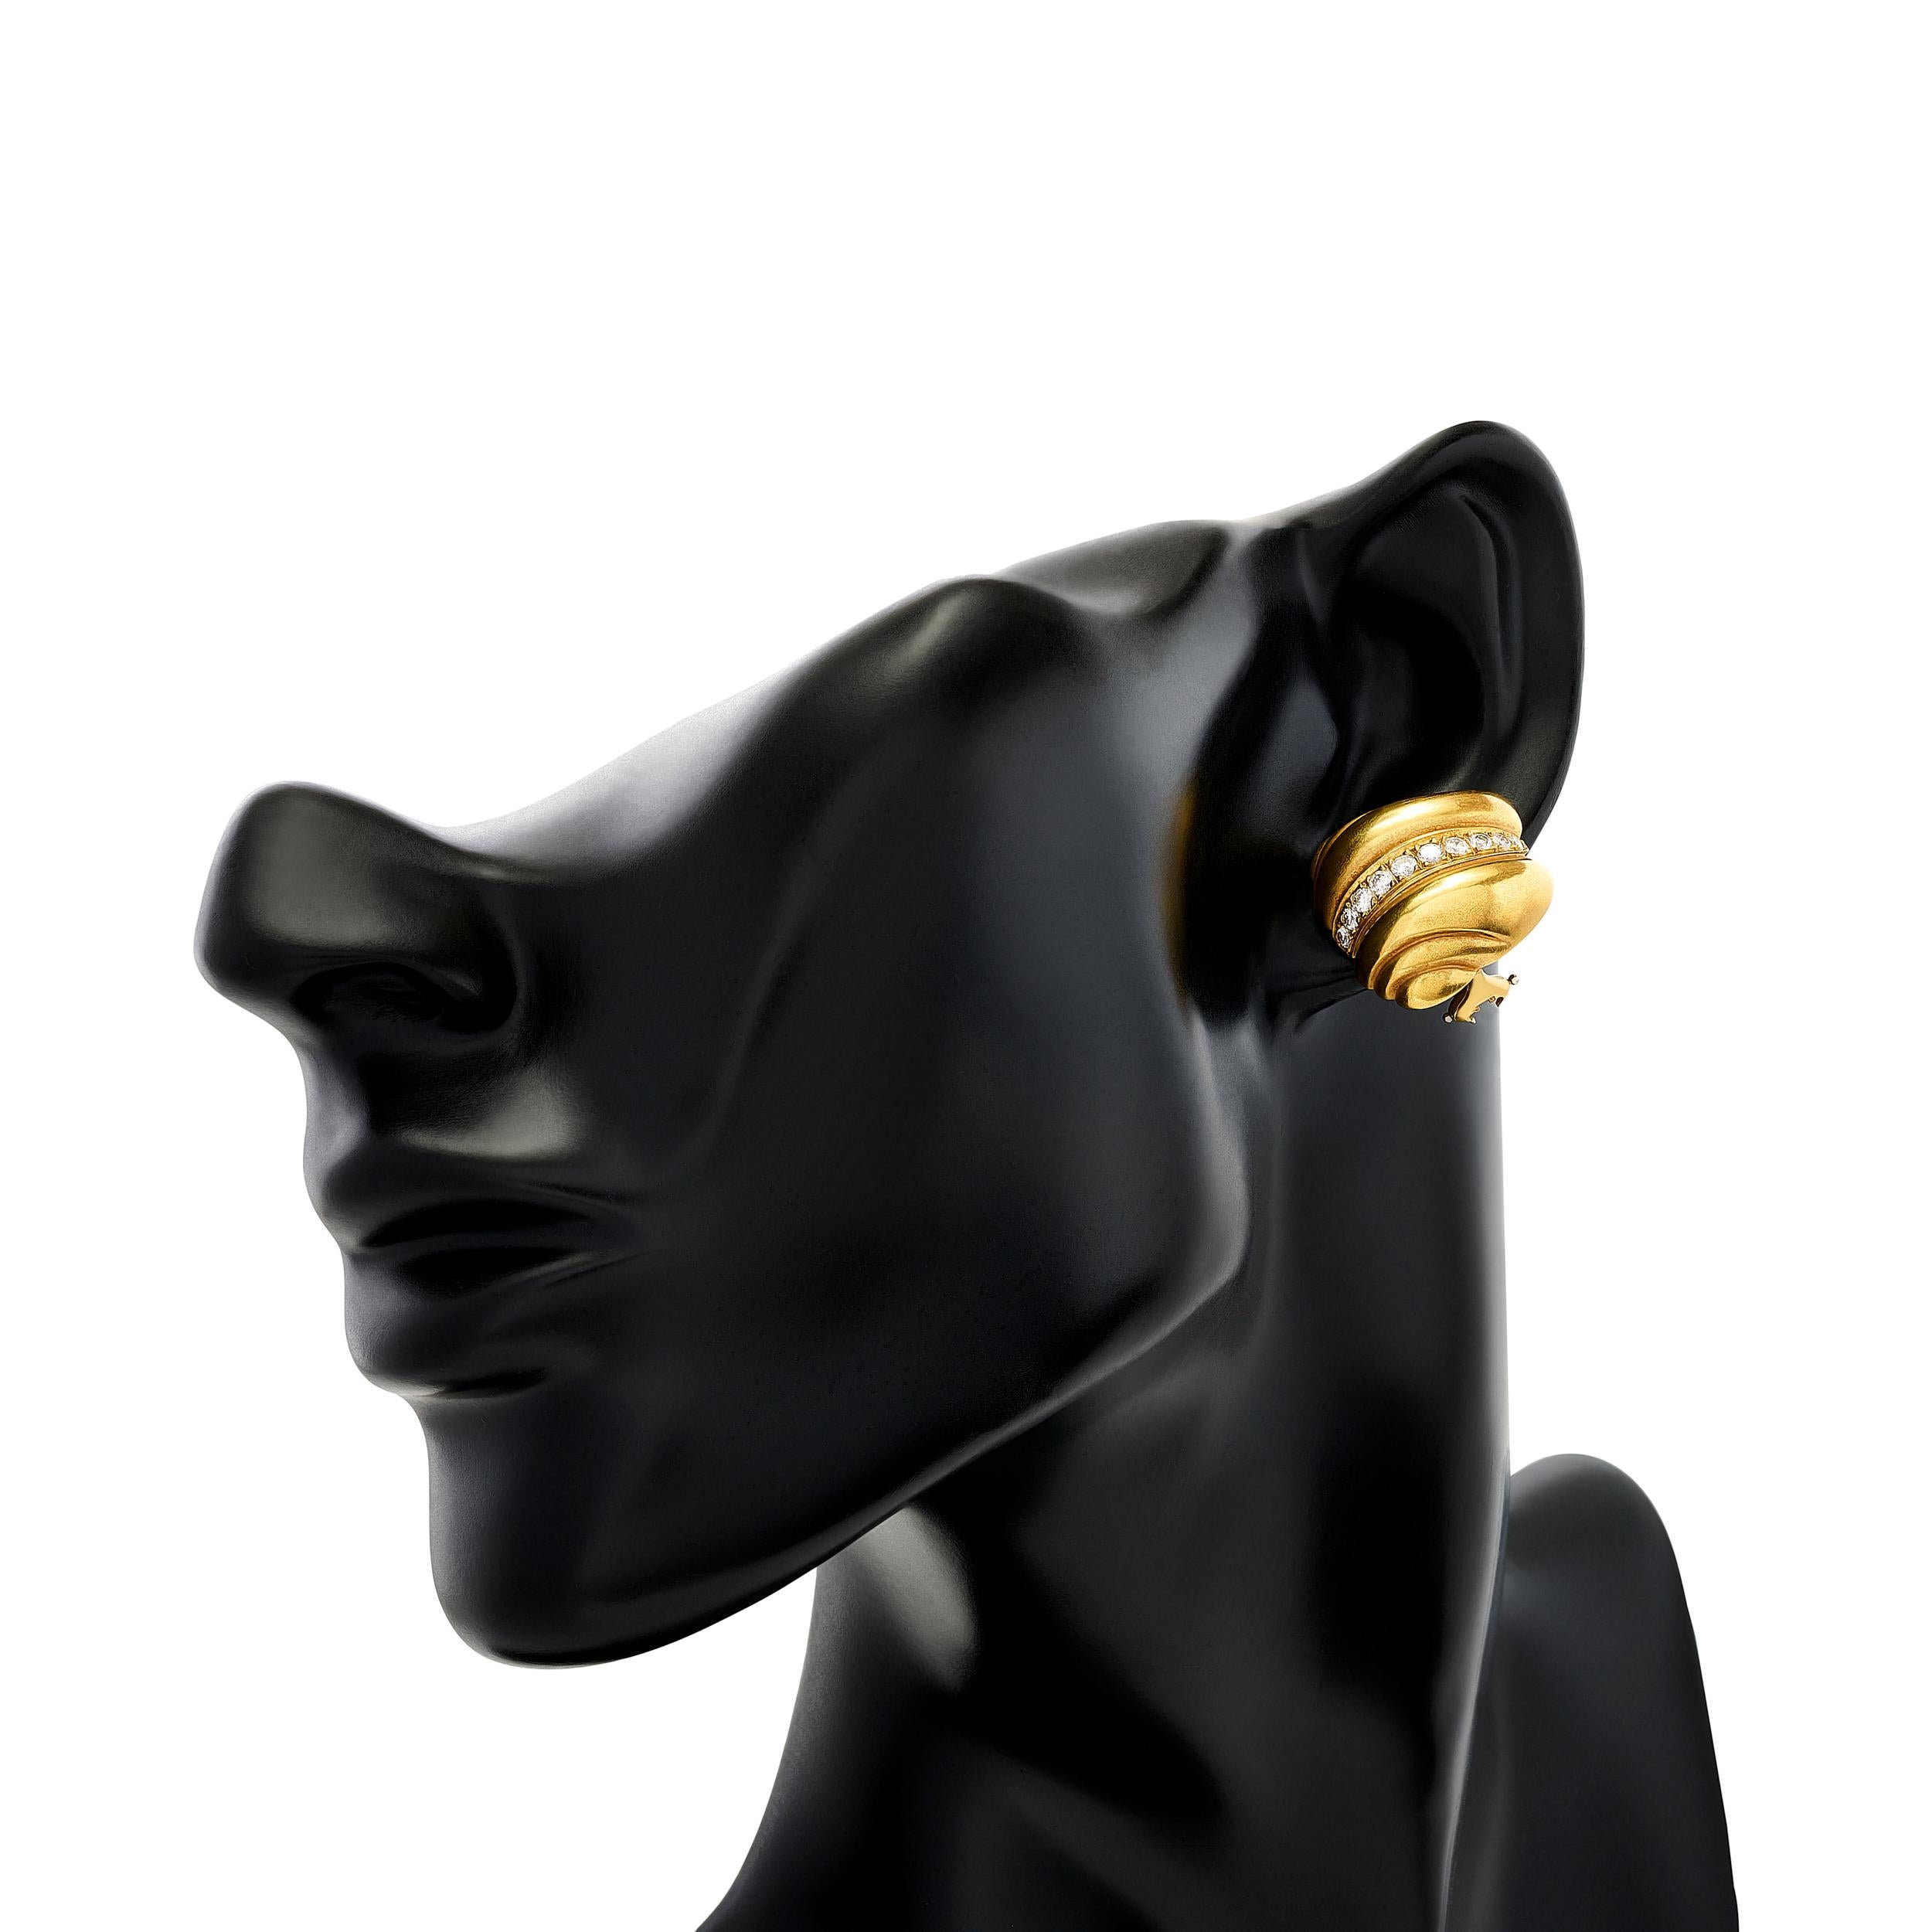 B. KIESELSTEIN-CORDs Diamant-Gold-Ohrringe sind eine Mischung aus Diamanten und Gold, die mühelos Raffinesse mit einem Hauch von kantigem Charme verbinden.

Insgesamt gibt es 20 runde Diamanten mit einem Gesamtgewicht von ca. 0,50 Karat; sie sind